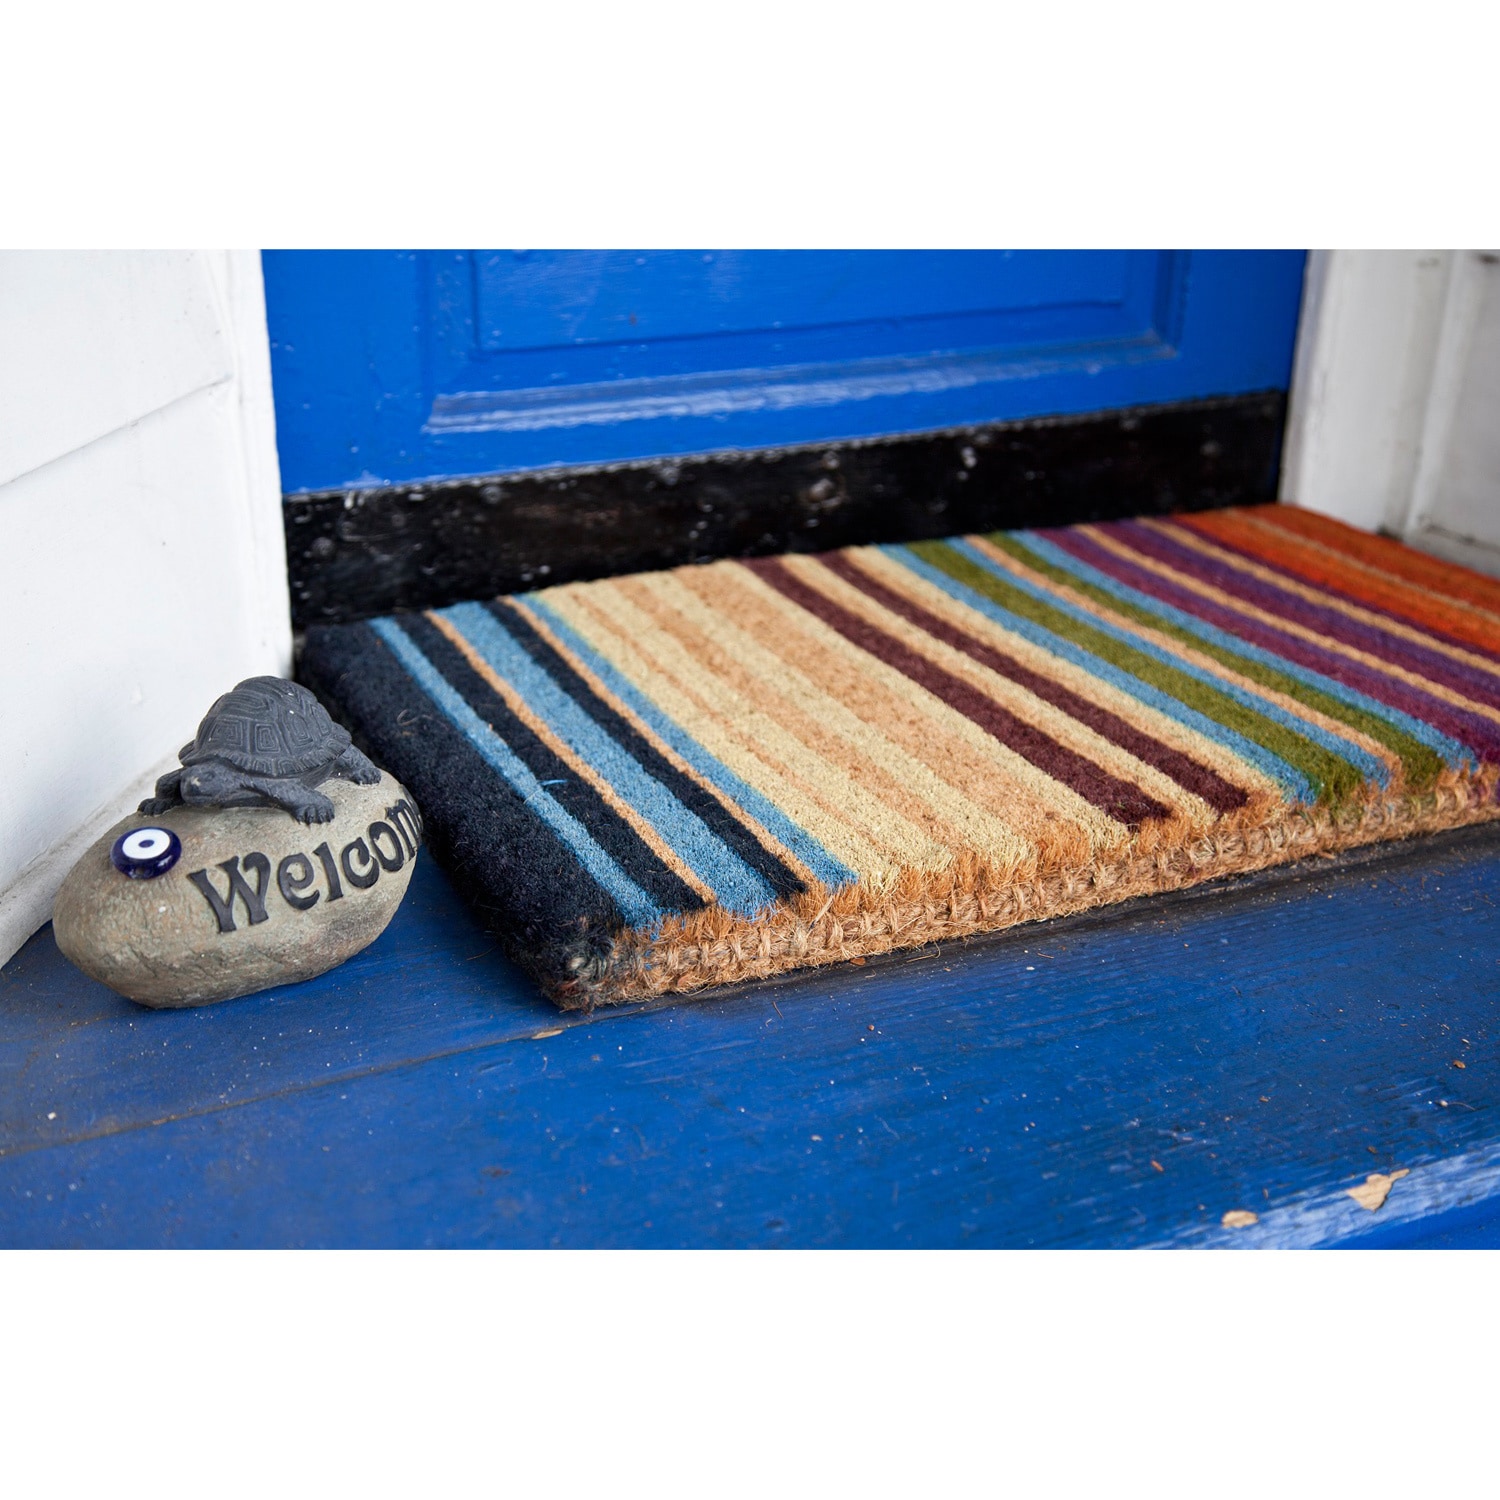 Envelor Indoor Outdoor Doormat Beige 24 in. x 36 in. Checker Half